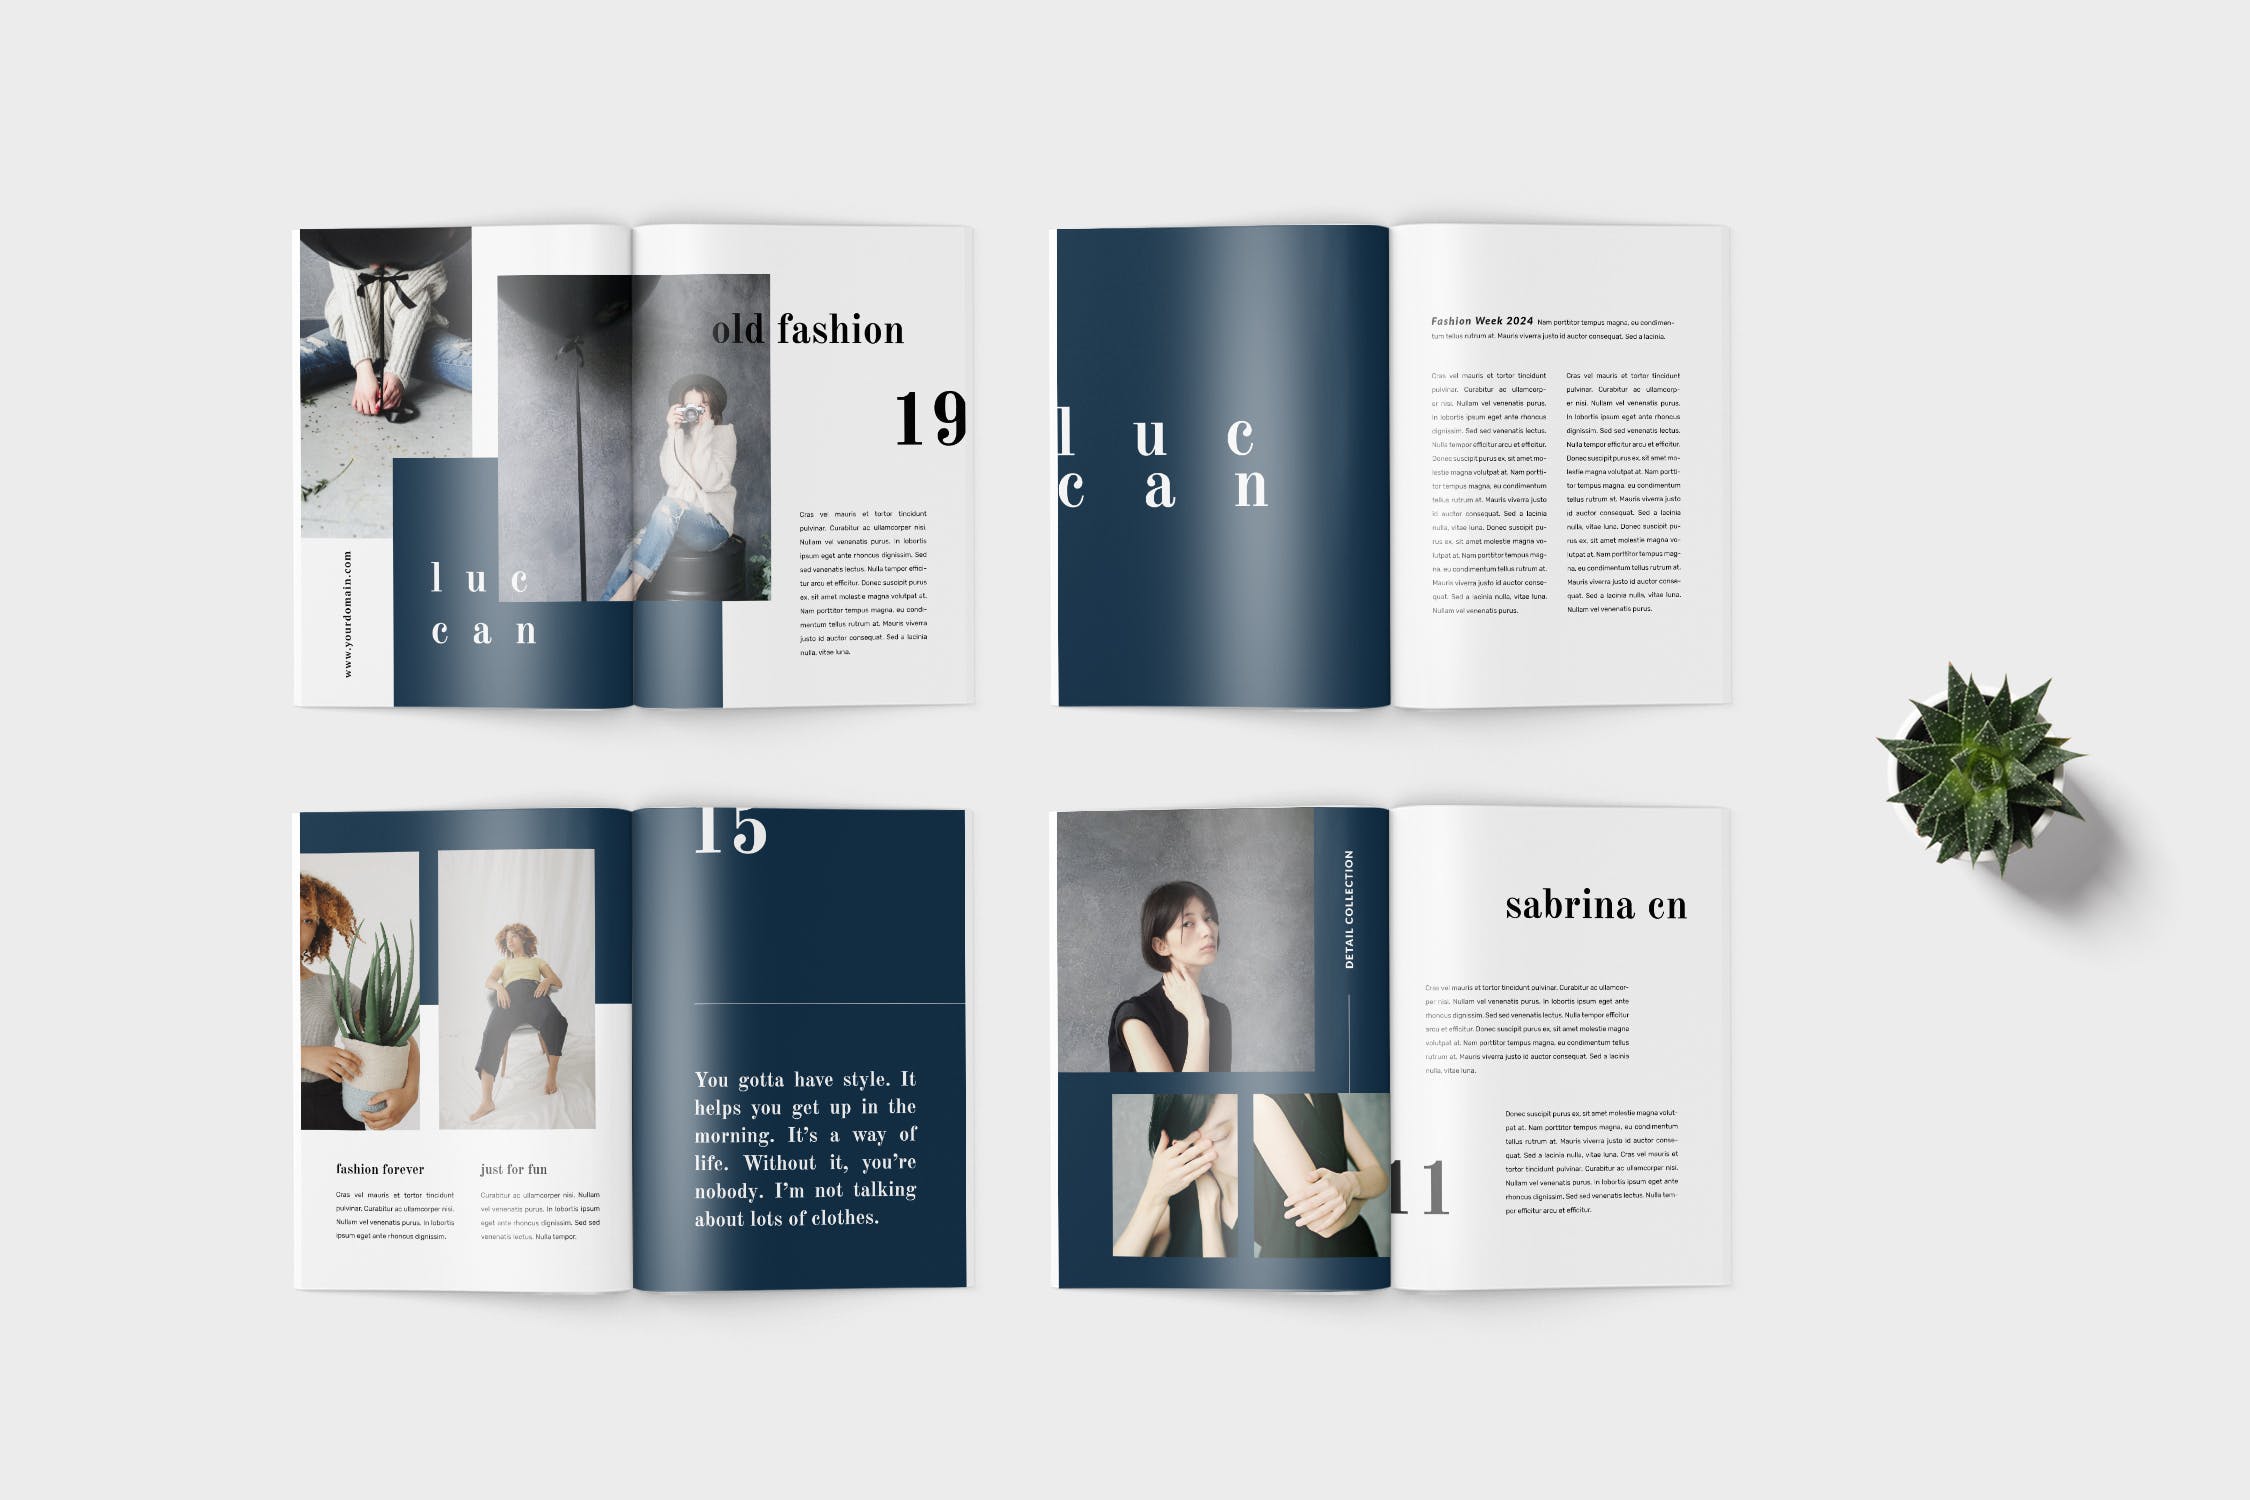 高端女性服装品牌产品16图库精选目录设计模板 Luccan Fashion Lookbook Catalogue插图(3)